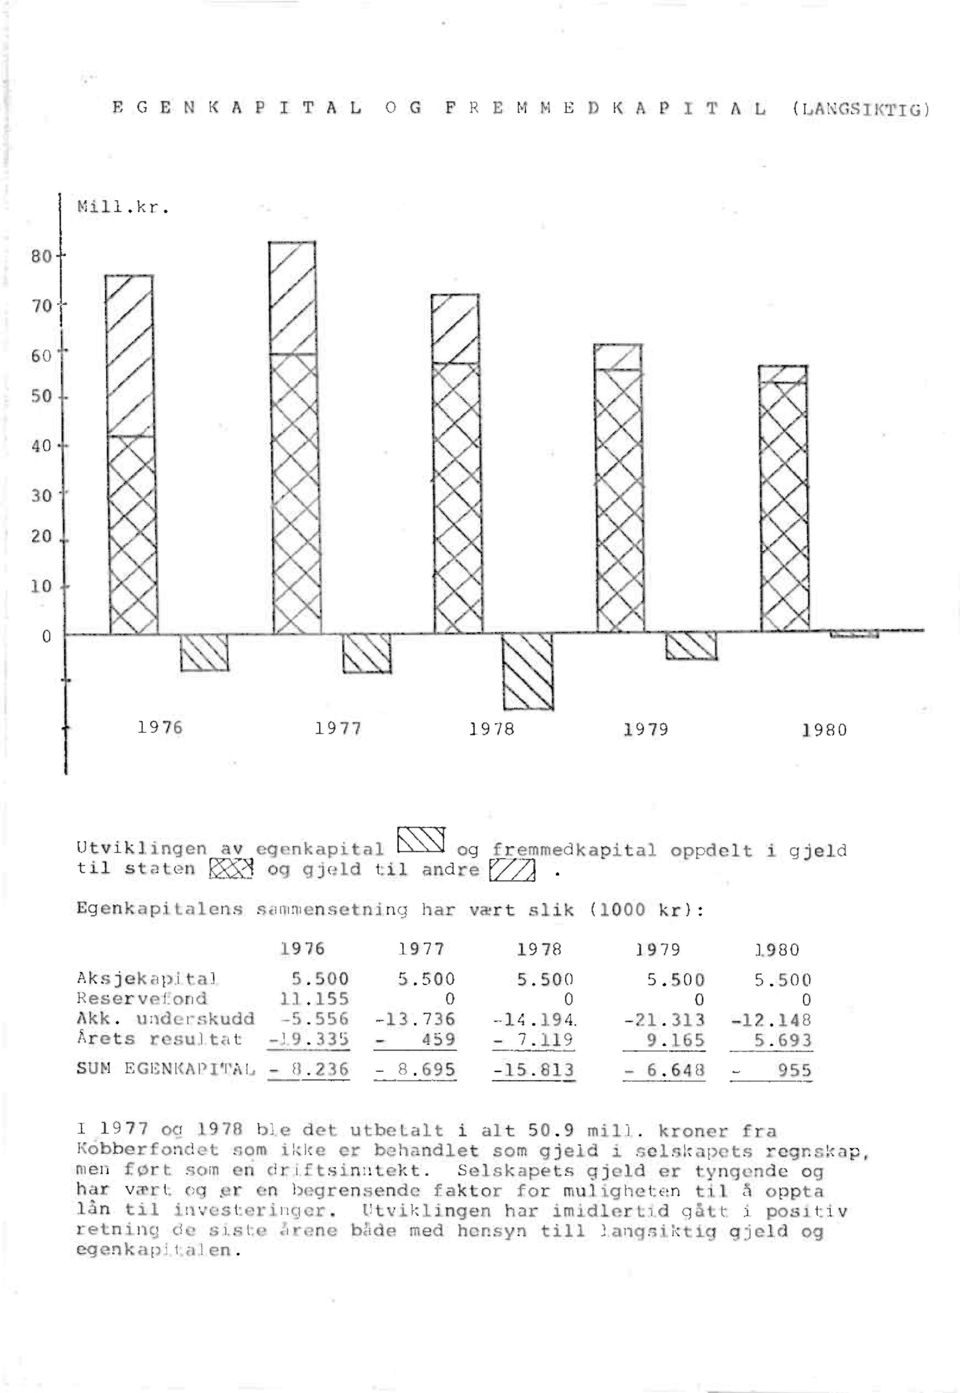 1976 1977 1978 1979 1980 Aksjekapital 5.500 5.500 5.500 5.500 5.500 Reservefond 11.155 0 0 0 0 Akk. underskudd -5.556-13.736-14.194, -21.313-12.148 Arets resultat -19.335-459 - 7.119 9.165 5.